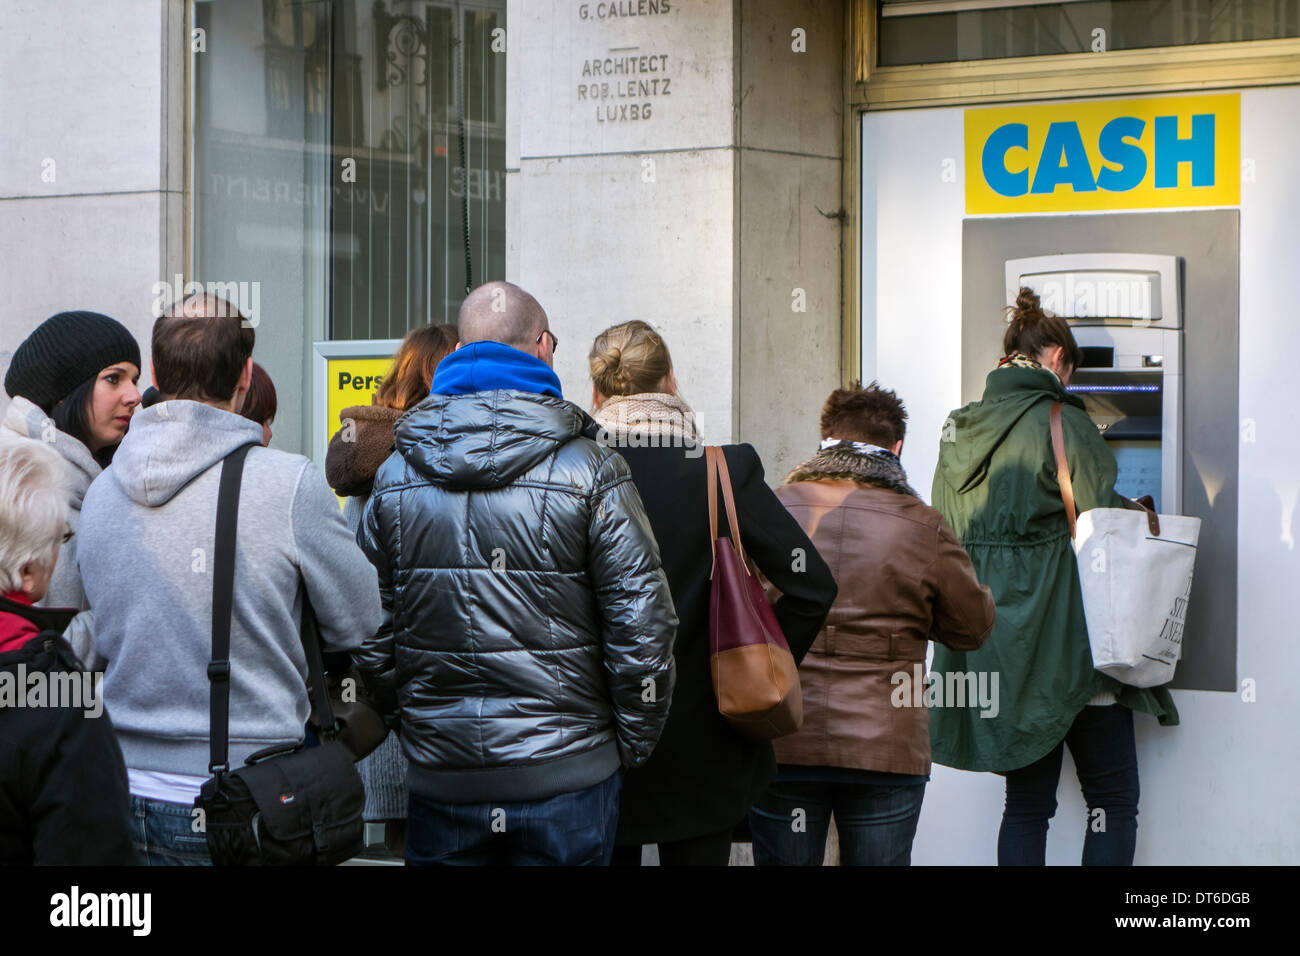 Gli amanti dello shopping in attesa nella coda per raccogliere denaro da ATM cash dispenser della banca in via dello shopping in inverno Foto Stock